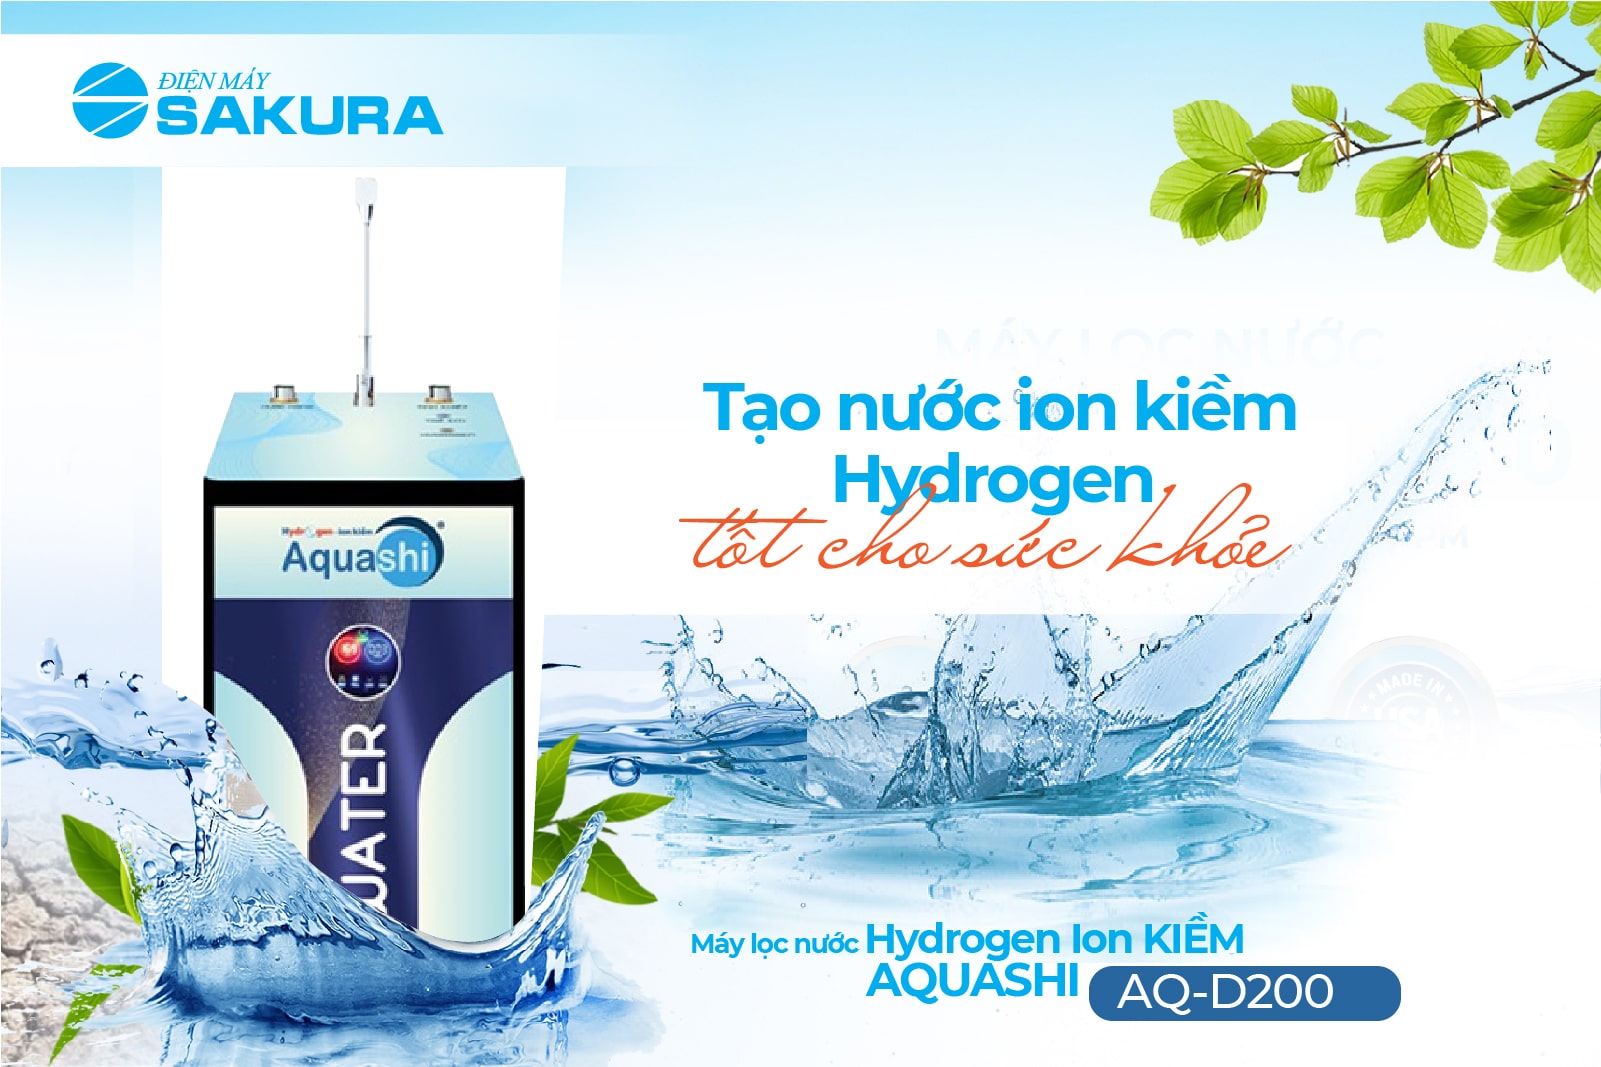 Máy lọc nước Hydrogen Aquashi AQ-D200  tạo 4 loại nước tiện lợi 